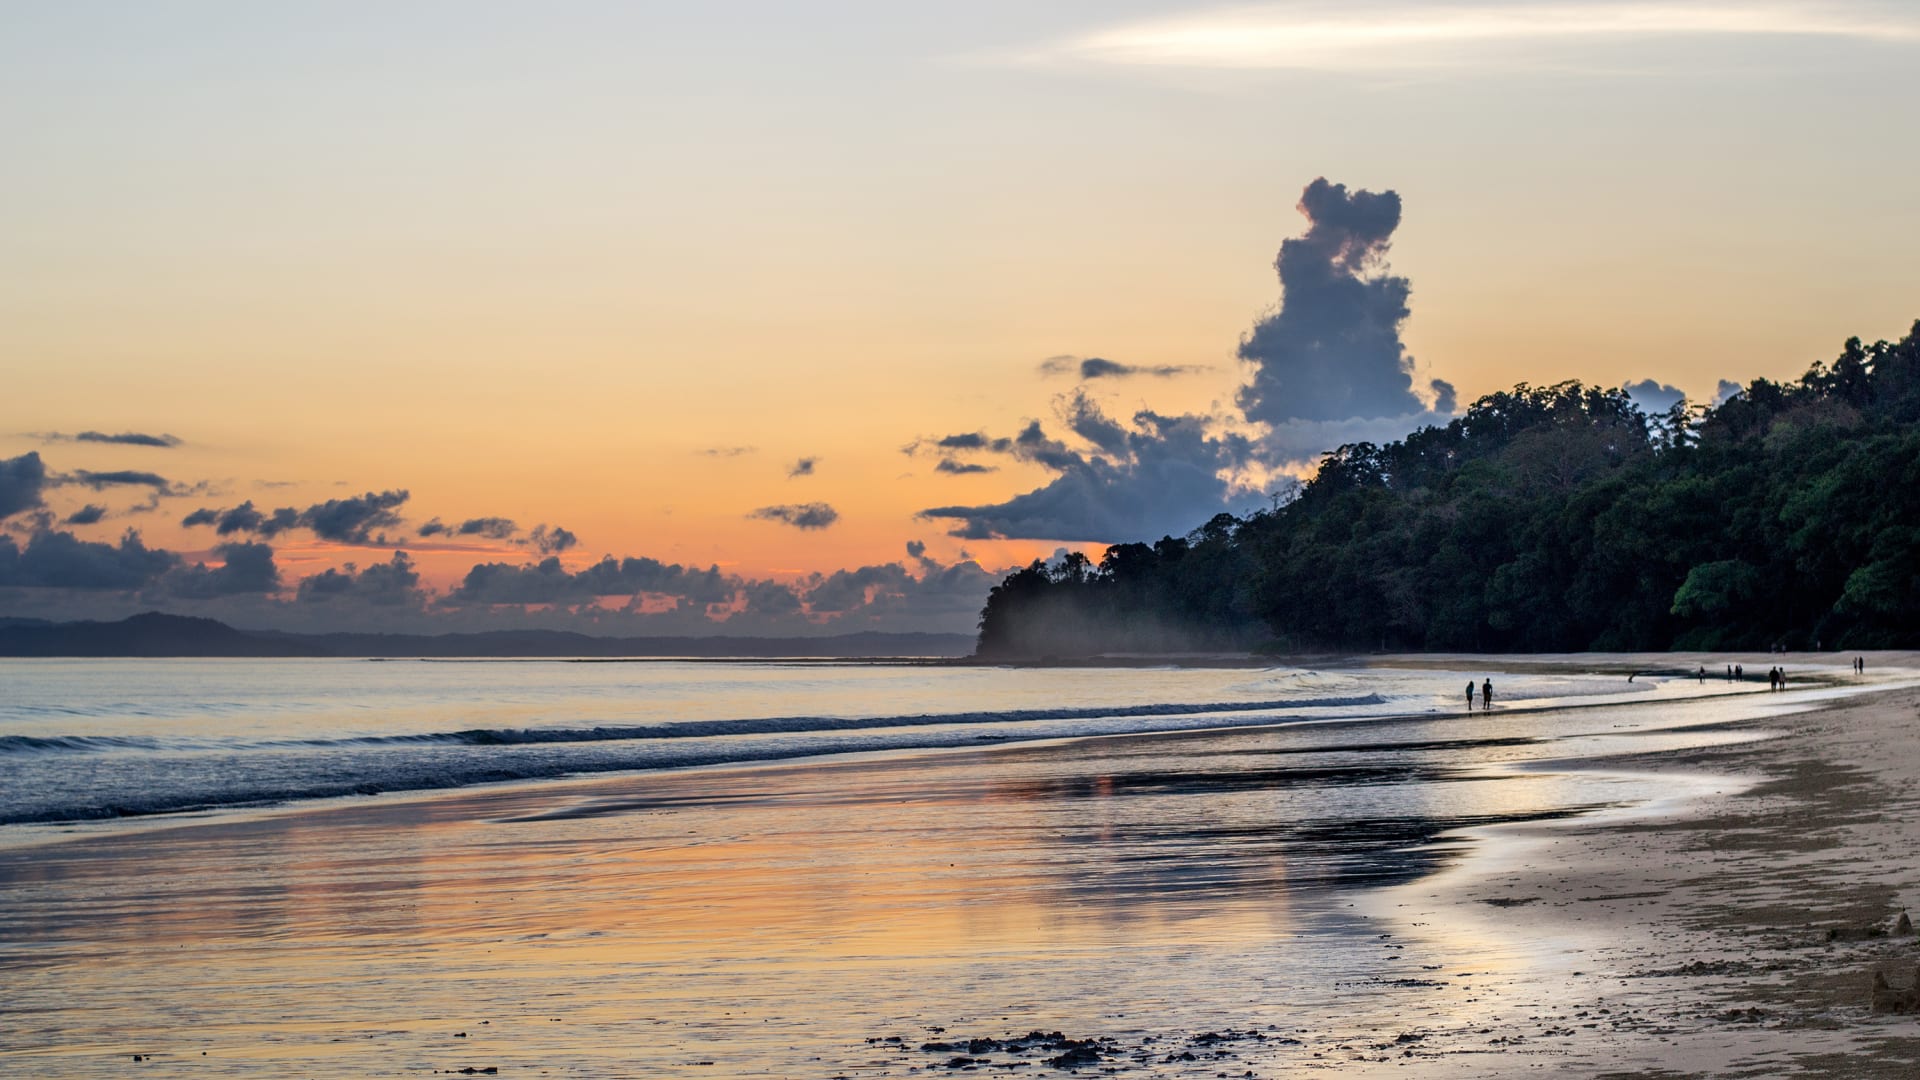 ما هي أفضل 10 شواطئ في العالم لعام 2022، وفقًا لموقع Tripadvisor؟